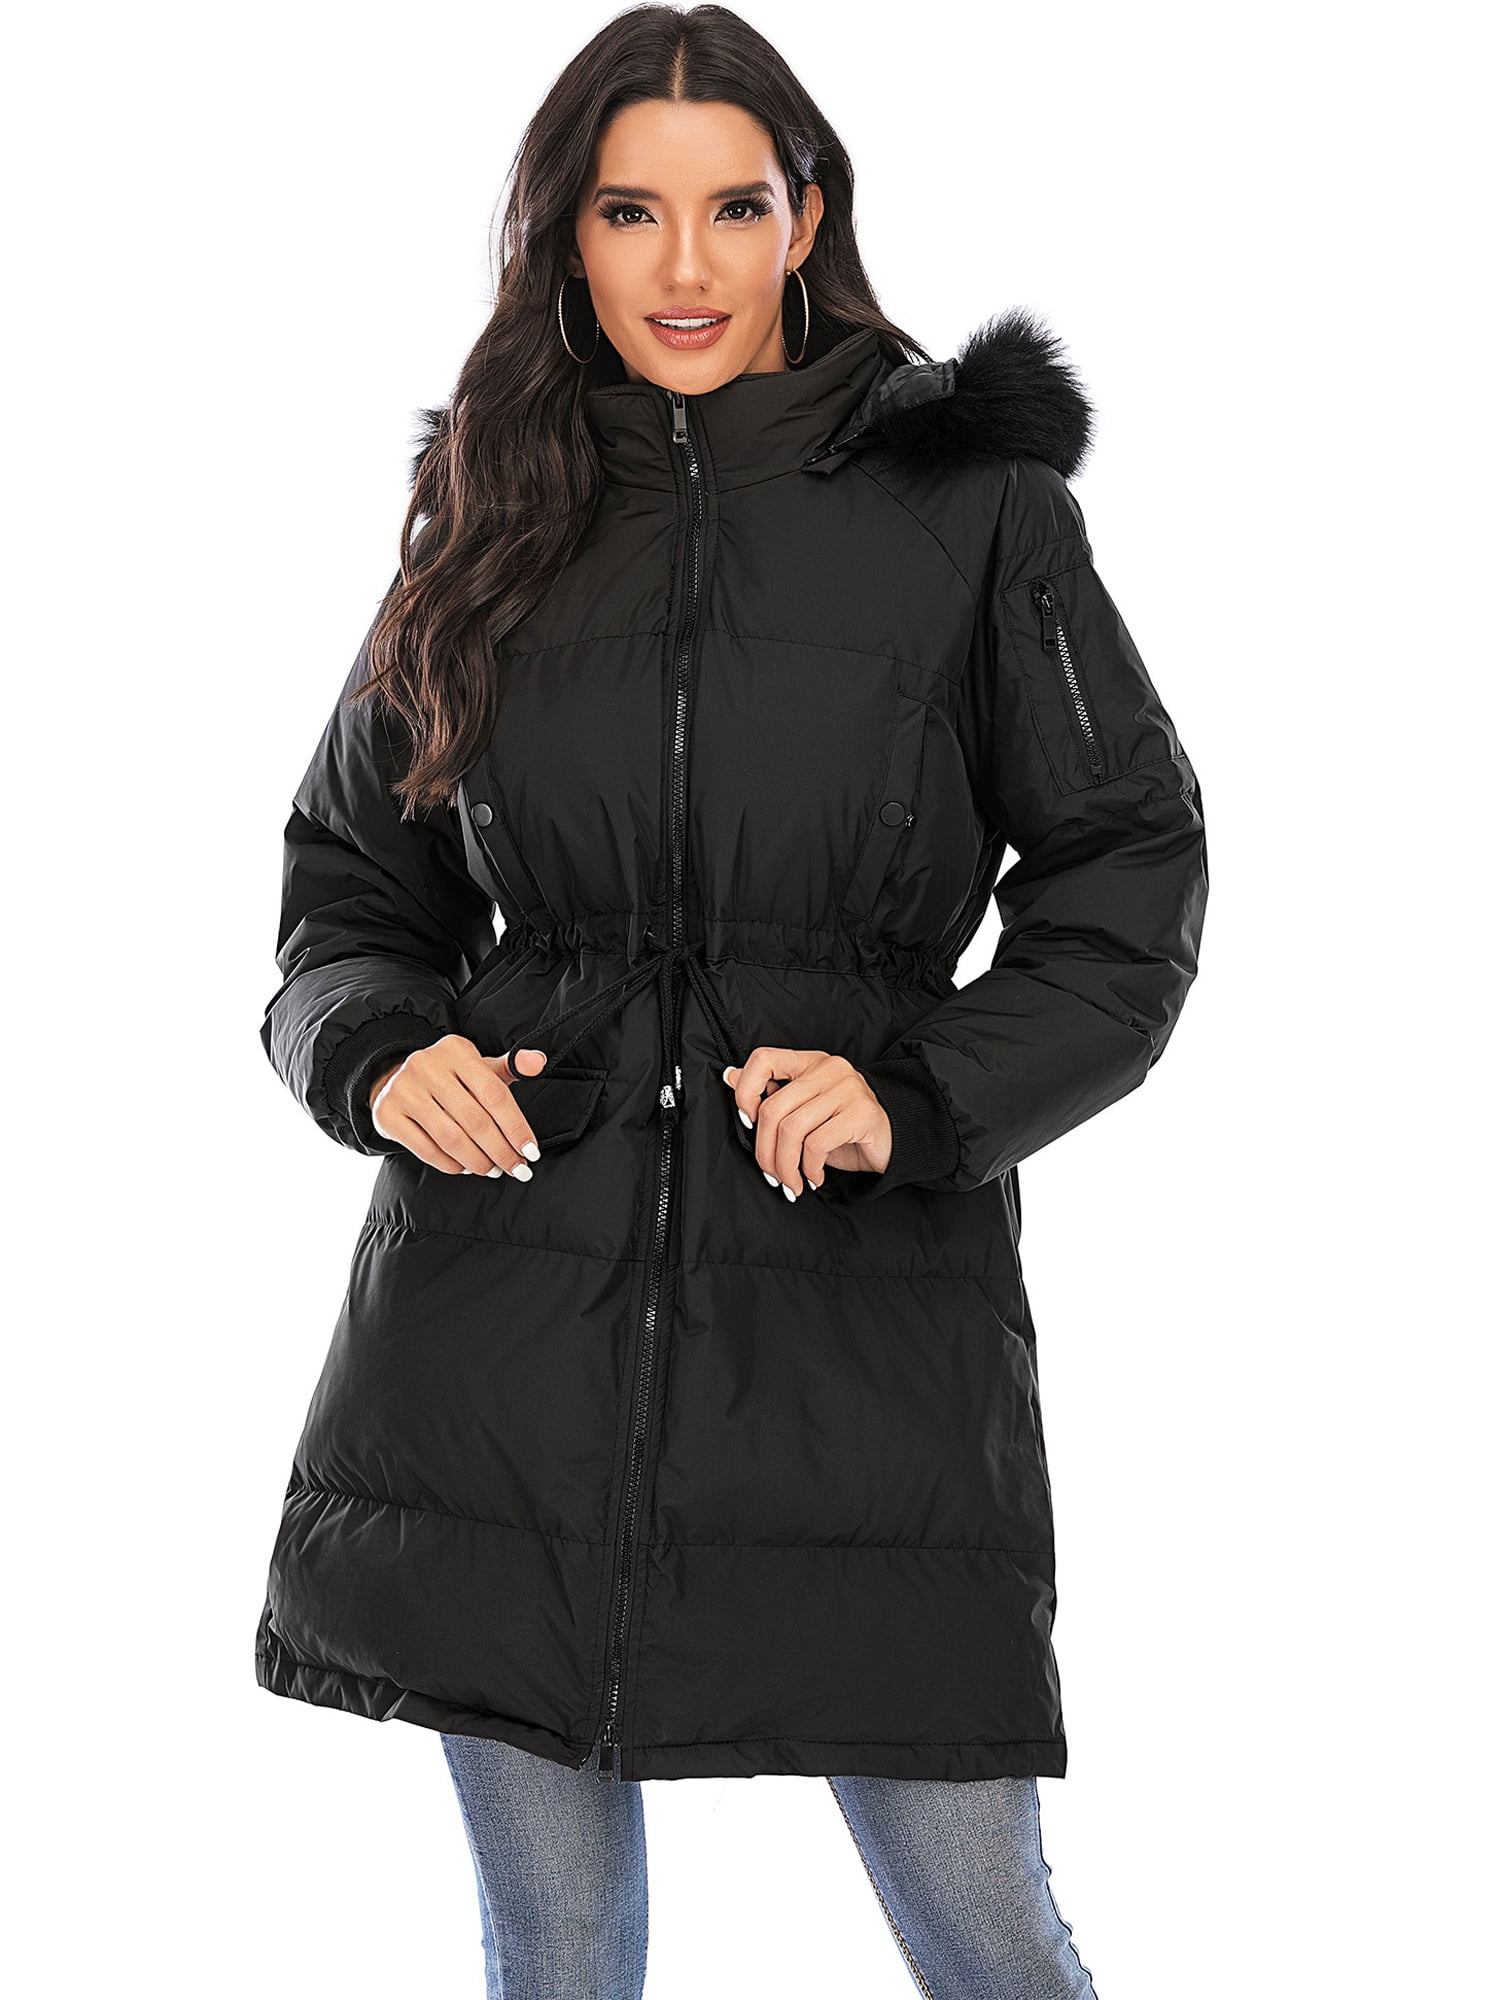 Women Ladies Hood Coat Jackets Waterproof Winter Parka Outdoor Outwear Plus Size